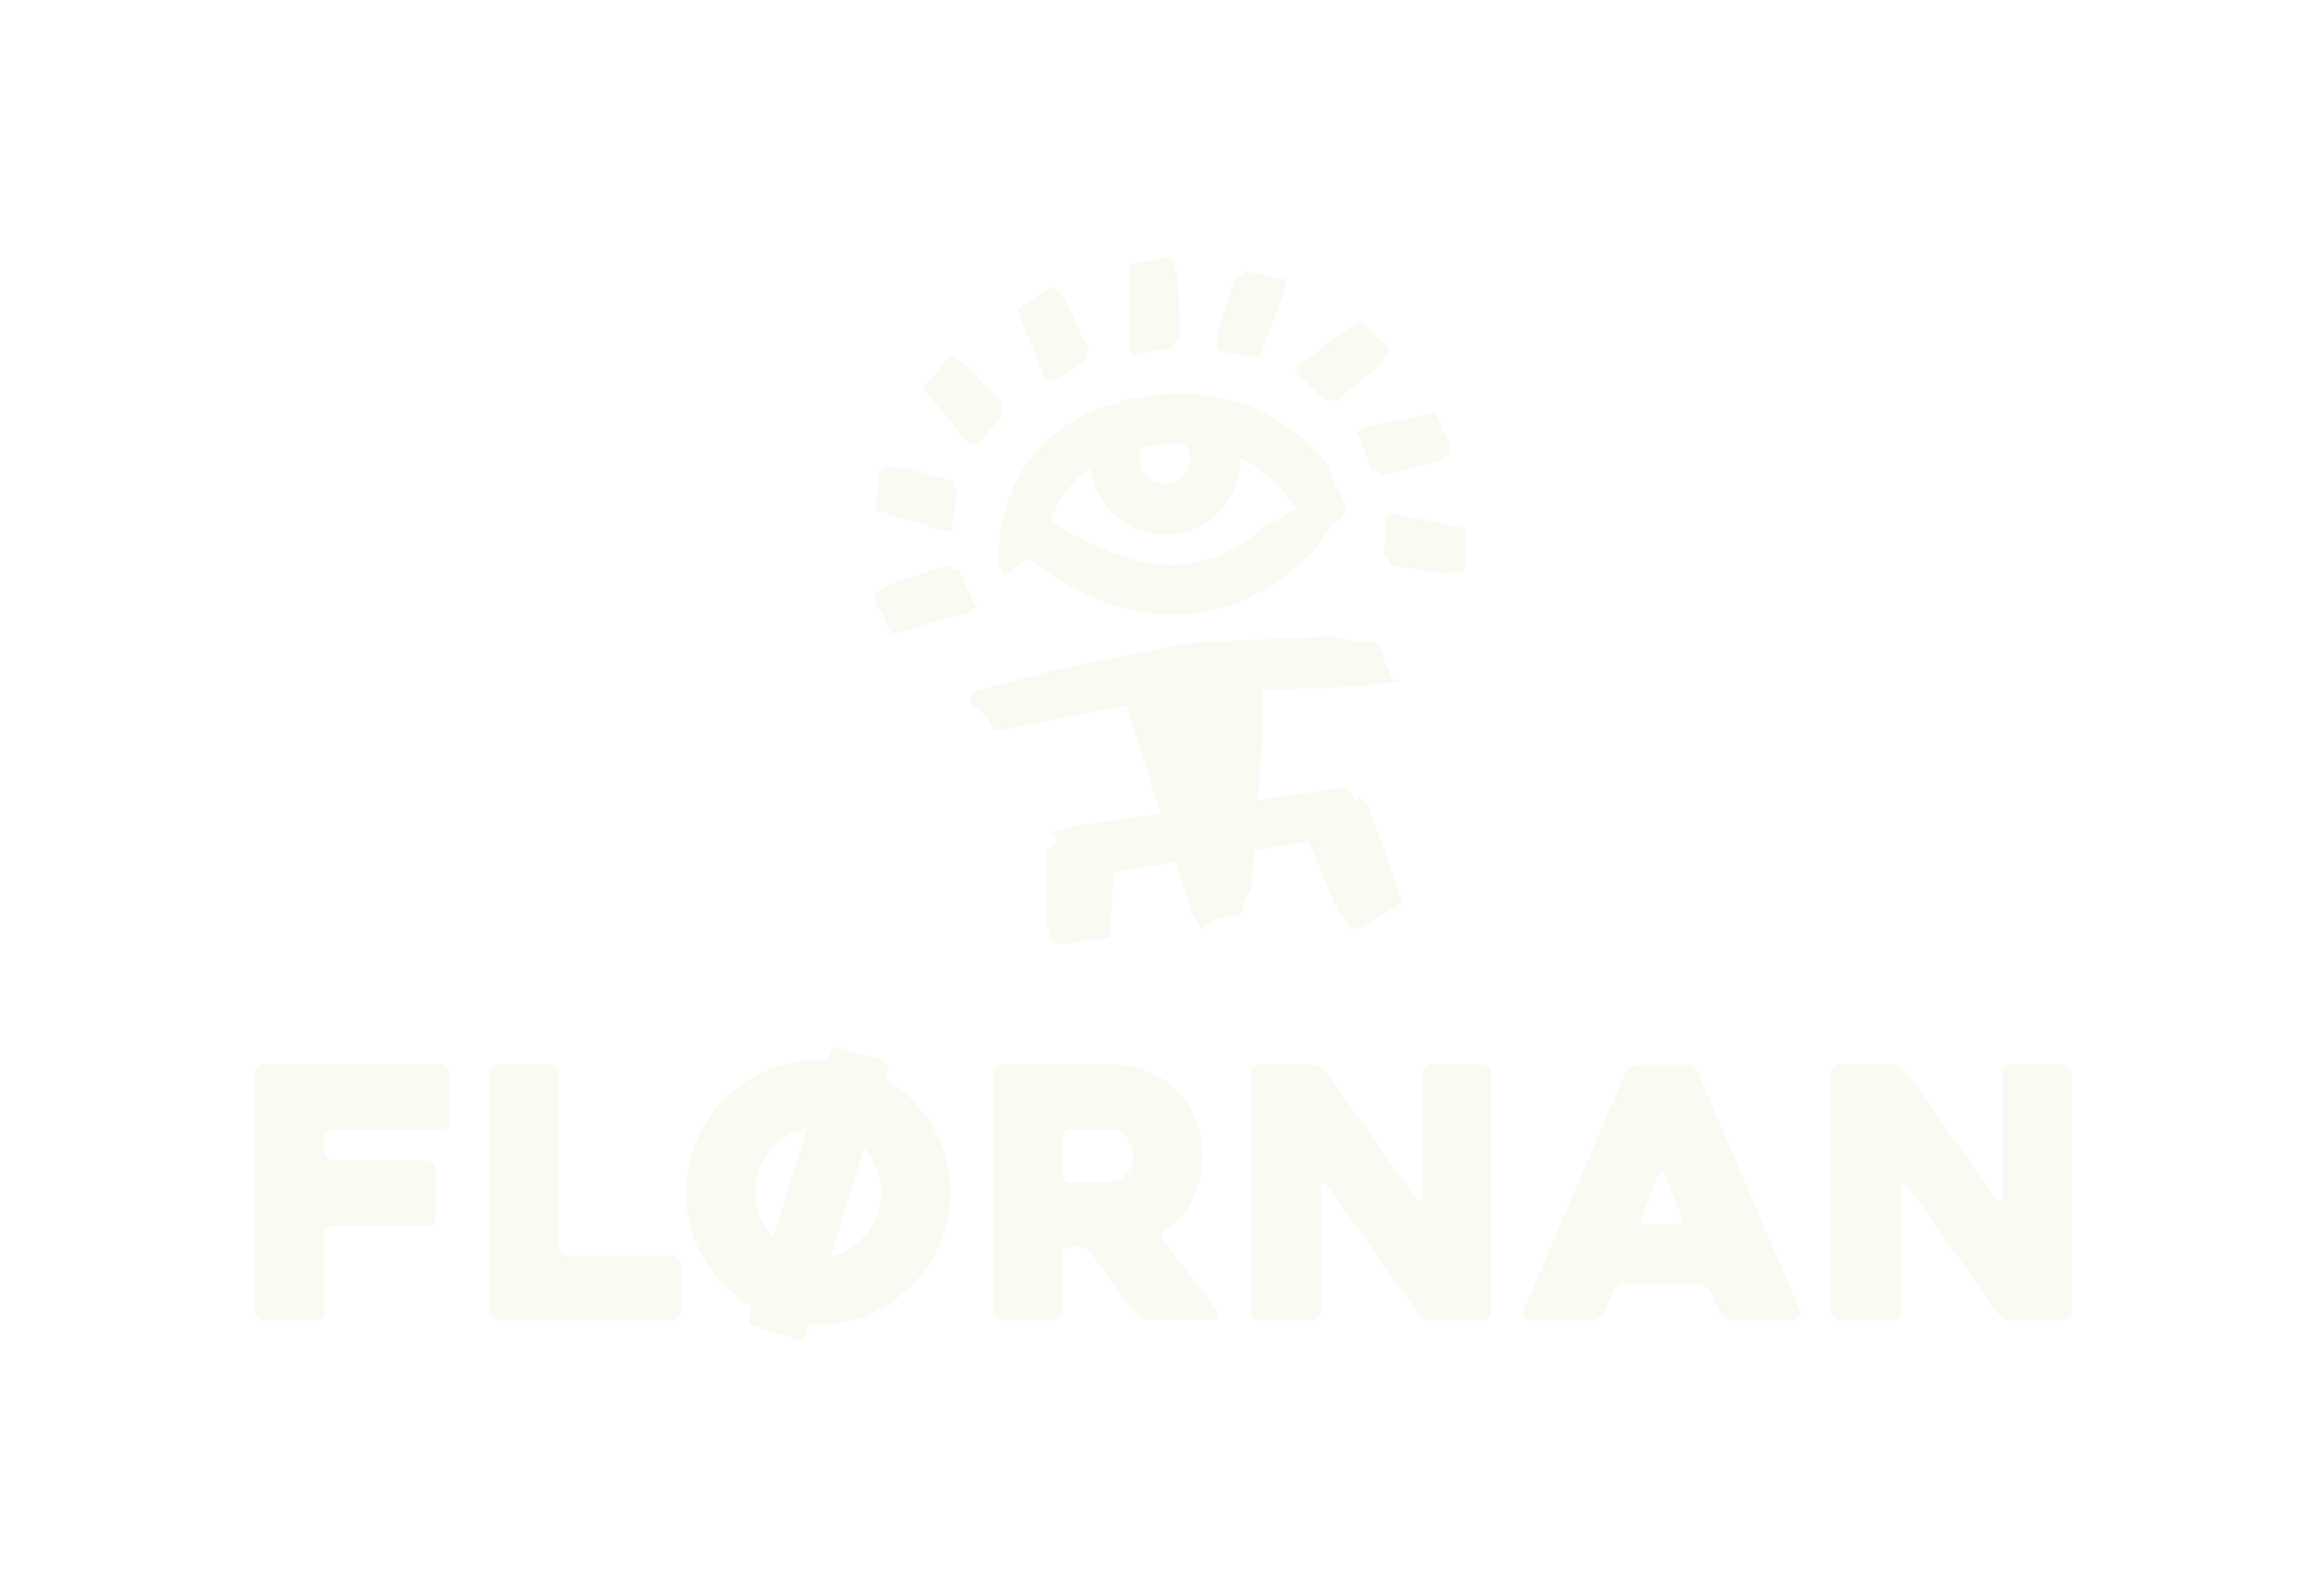 Flornan